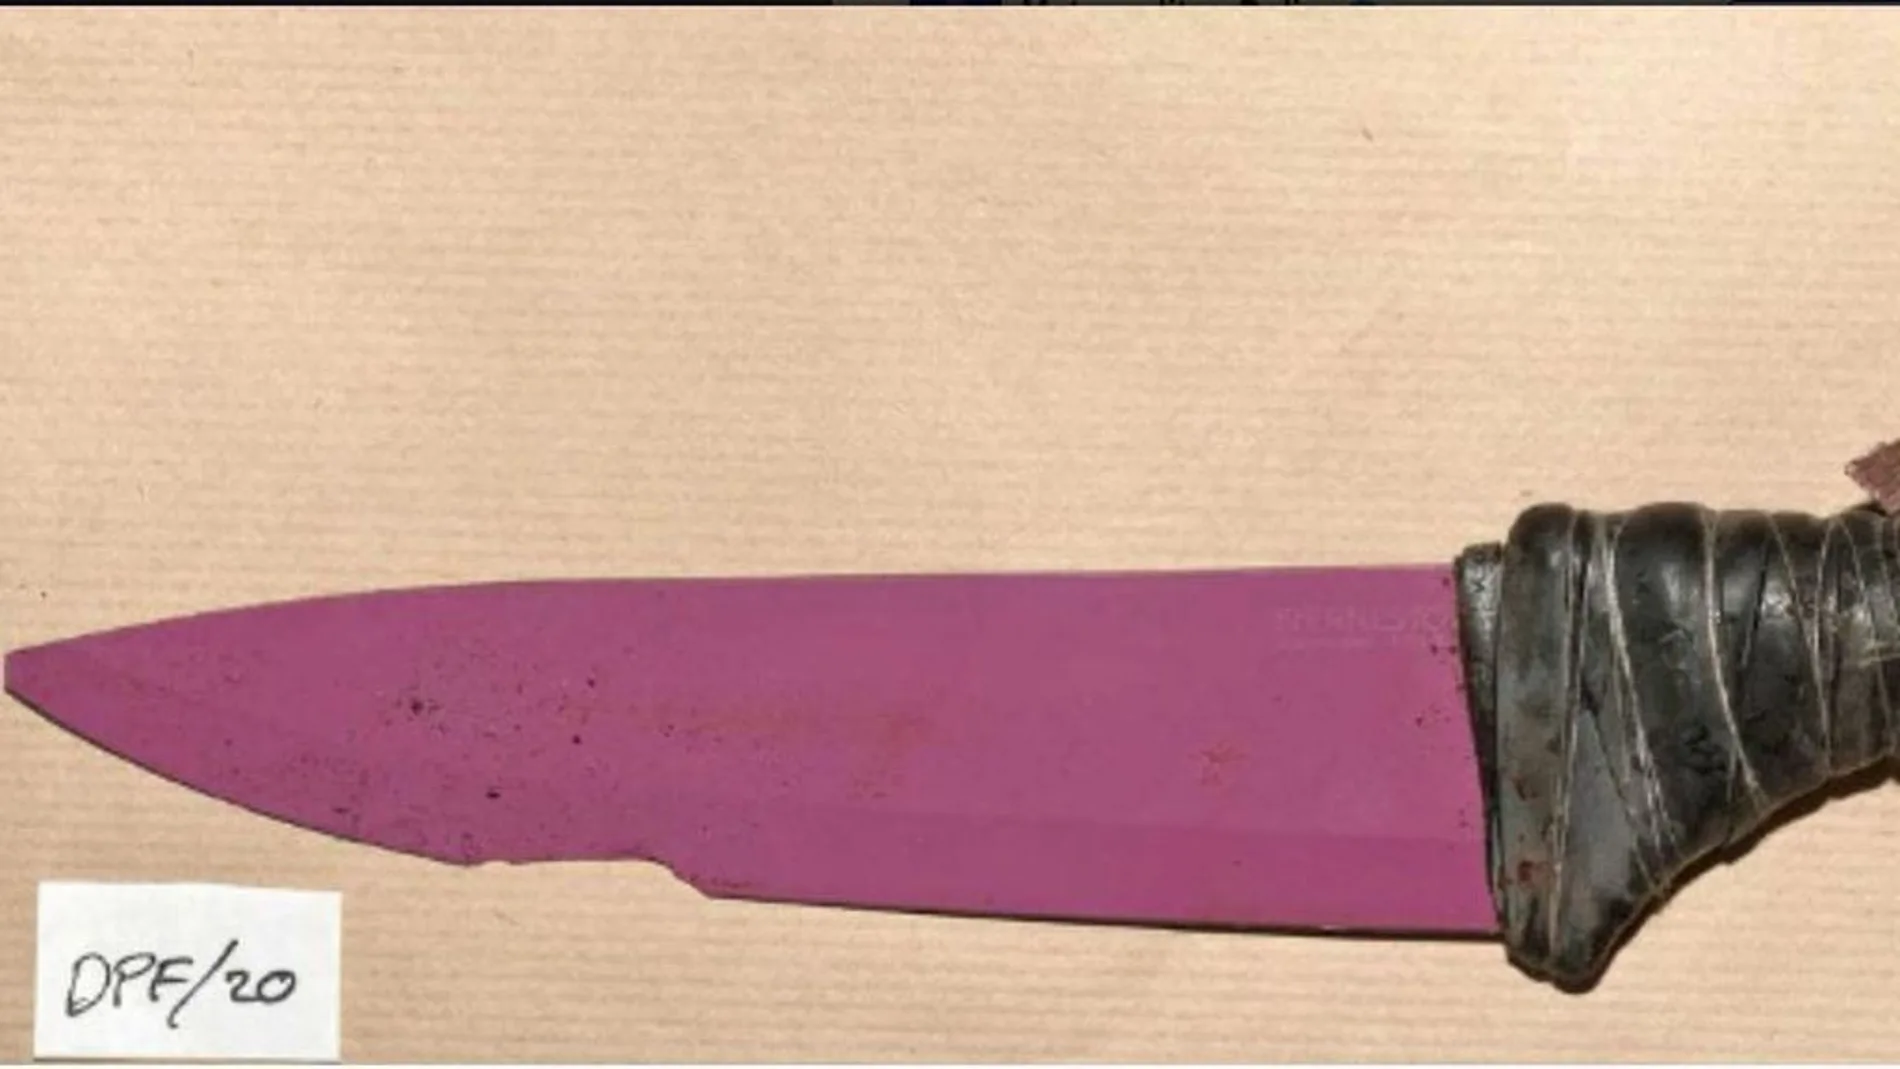 Los cuchillos utilizados por los terroristas de Londres